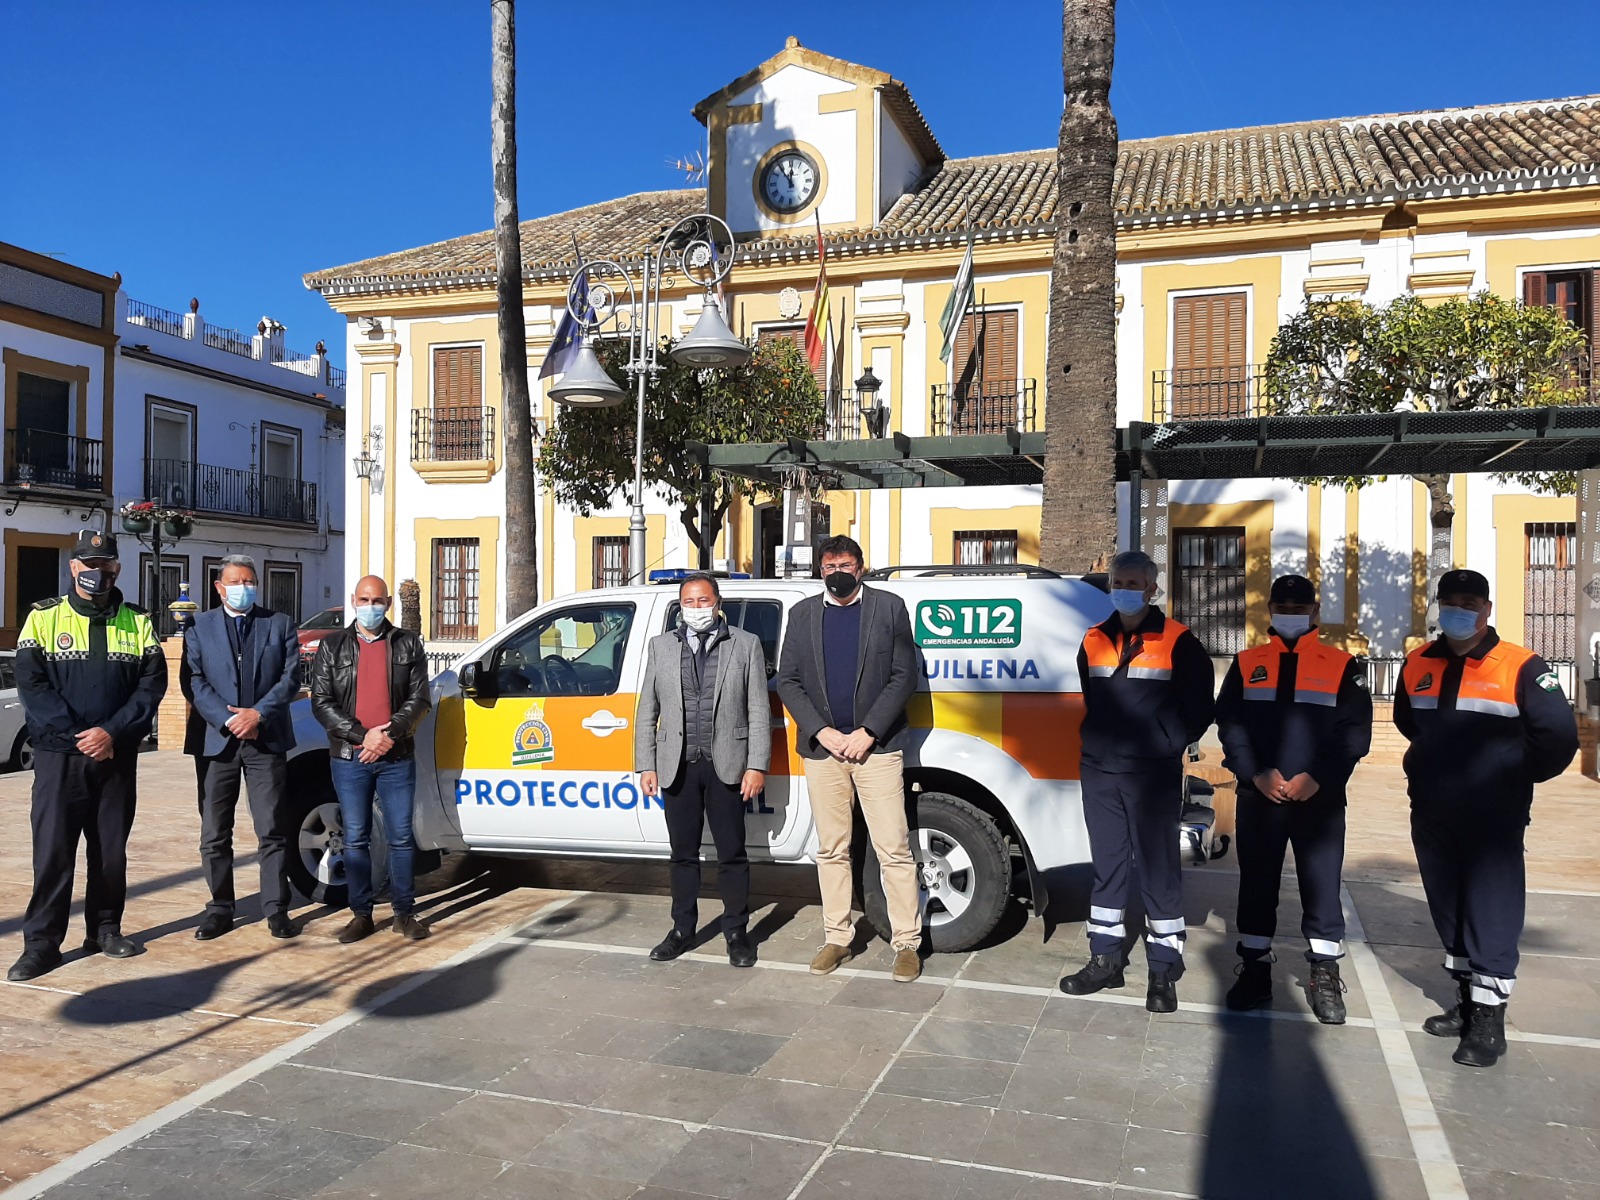 Guillena incorpora una nueva agrupación de Protección Civil